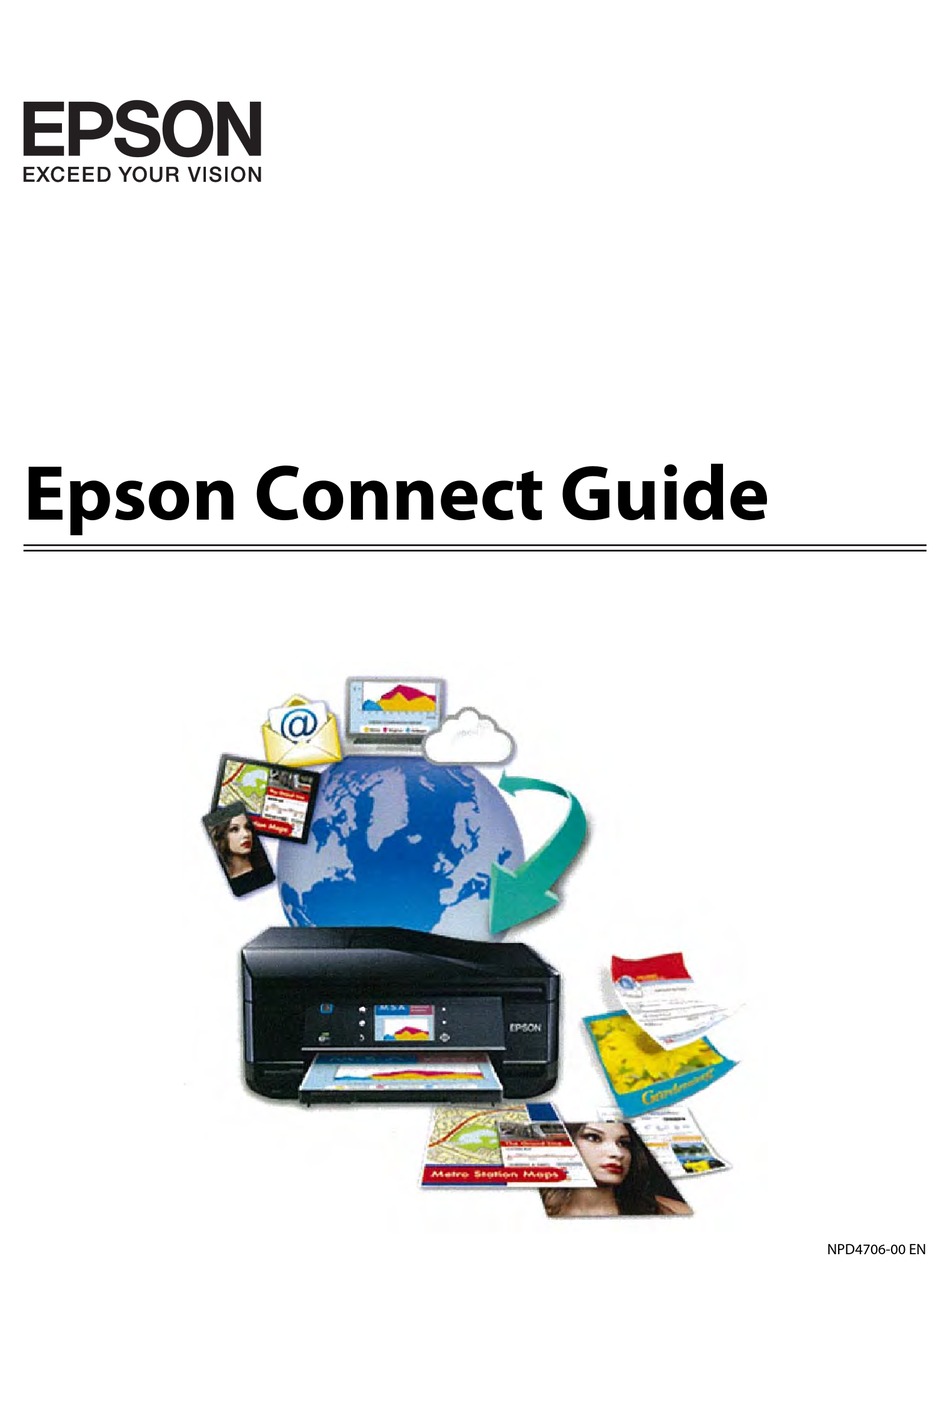 EPSON WORKFORCE 435 MANUAL Pdf Download | ManualsLib